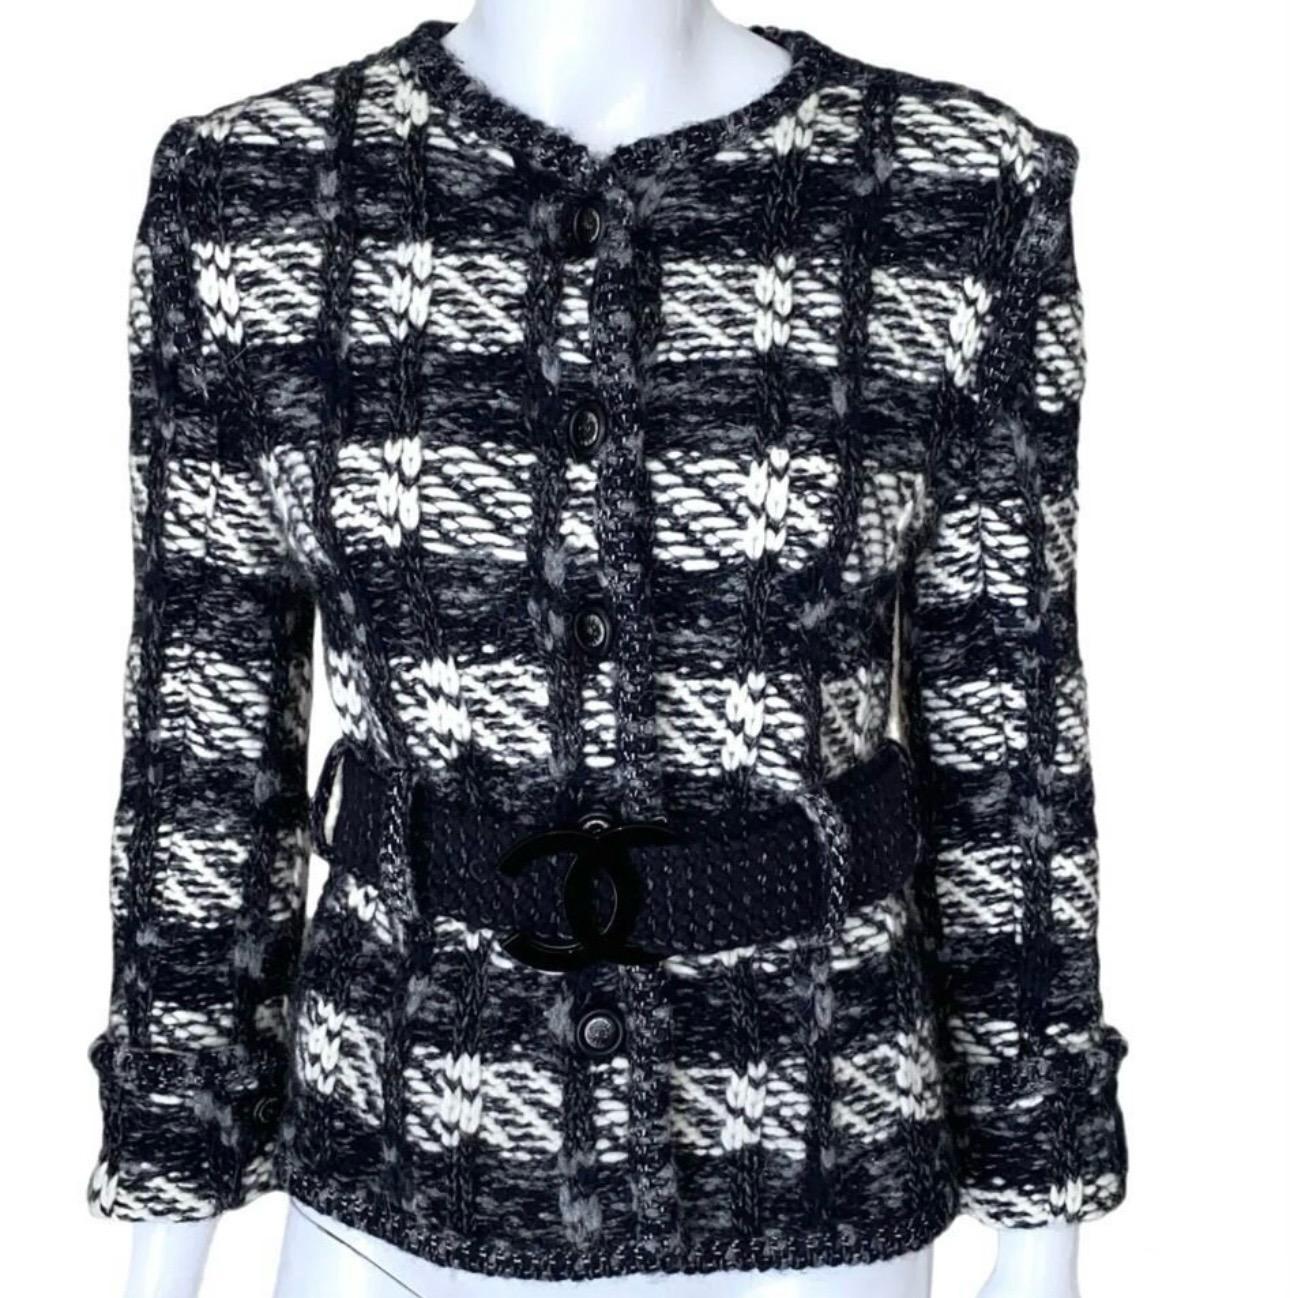  Chanel - Veste en tweed tissée noire avec boucle logo CC Unisexe 